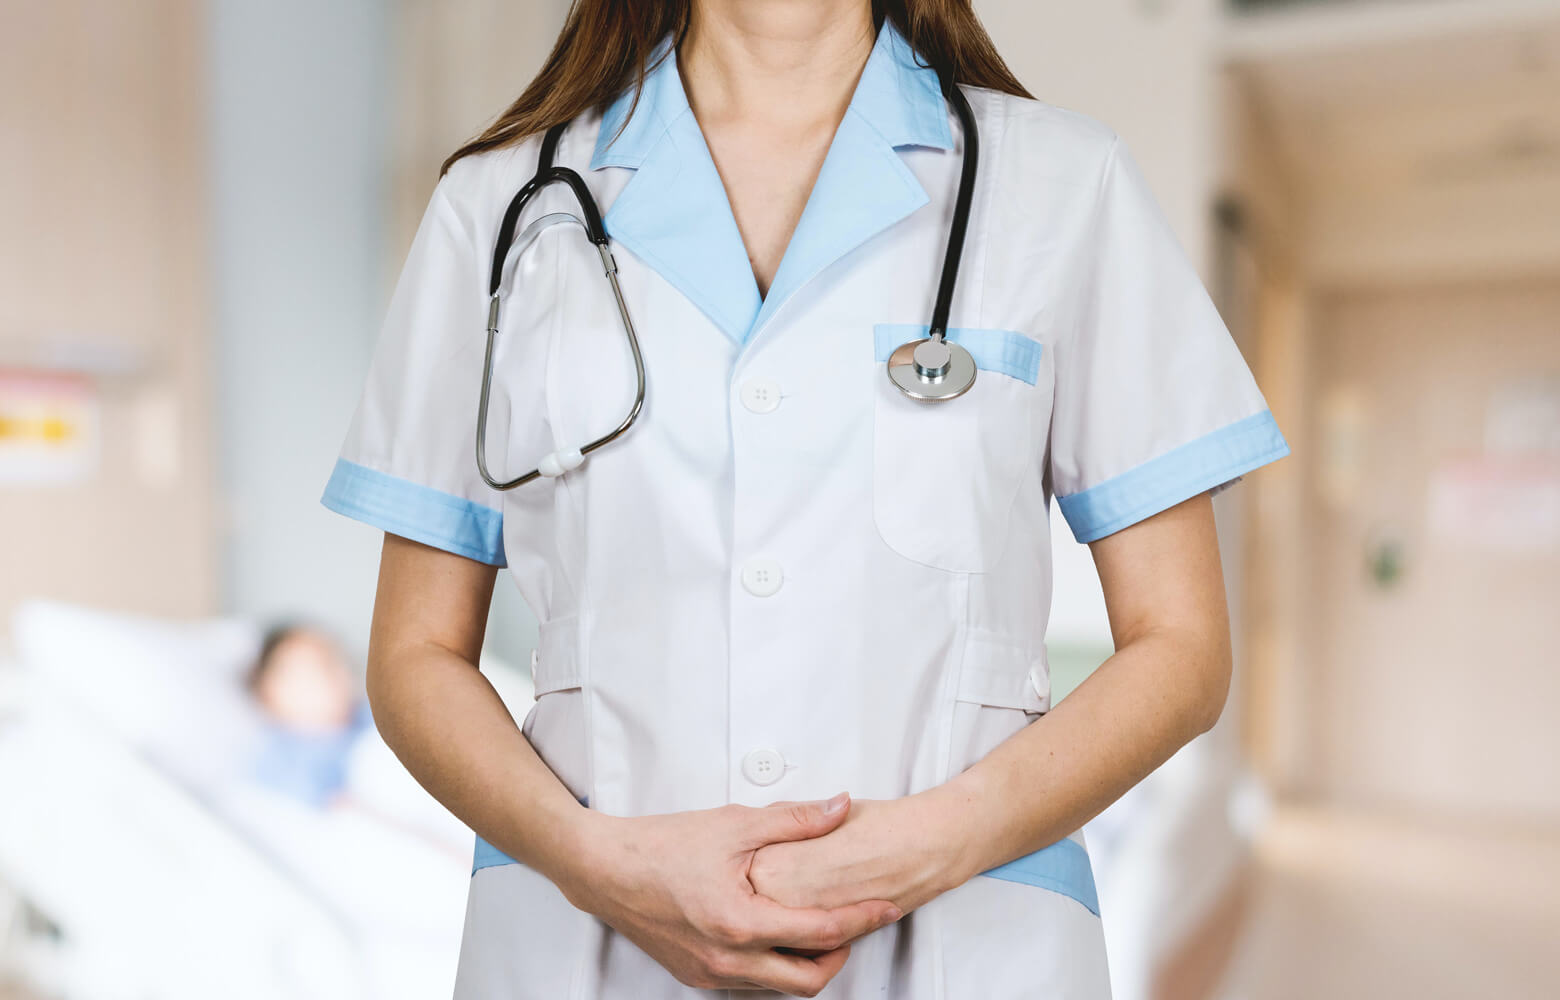 Métier des infirmiers salariés : spécificités et avantages